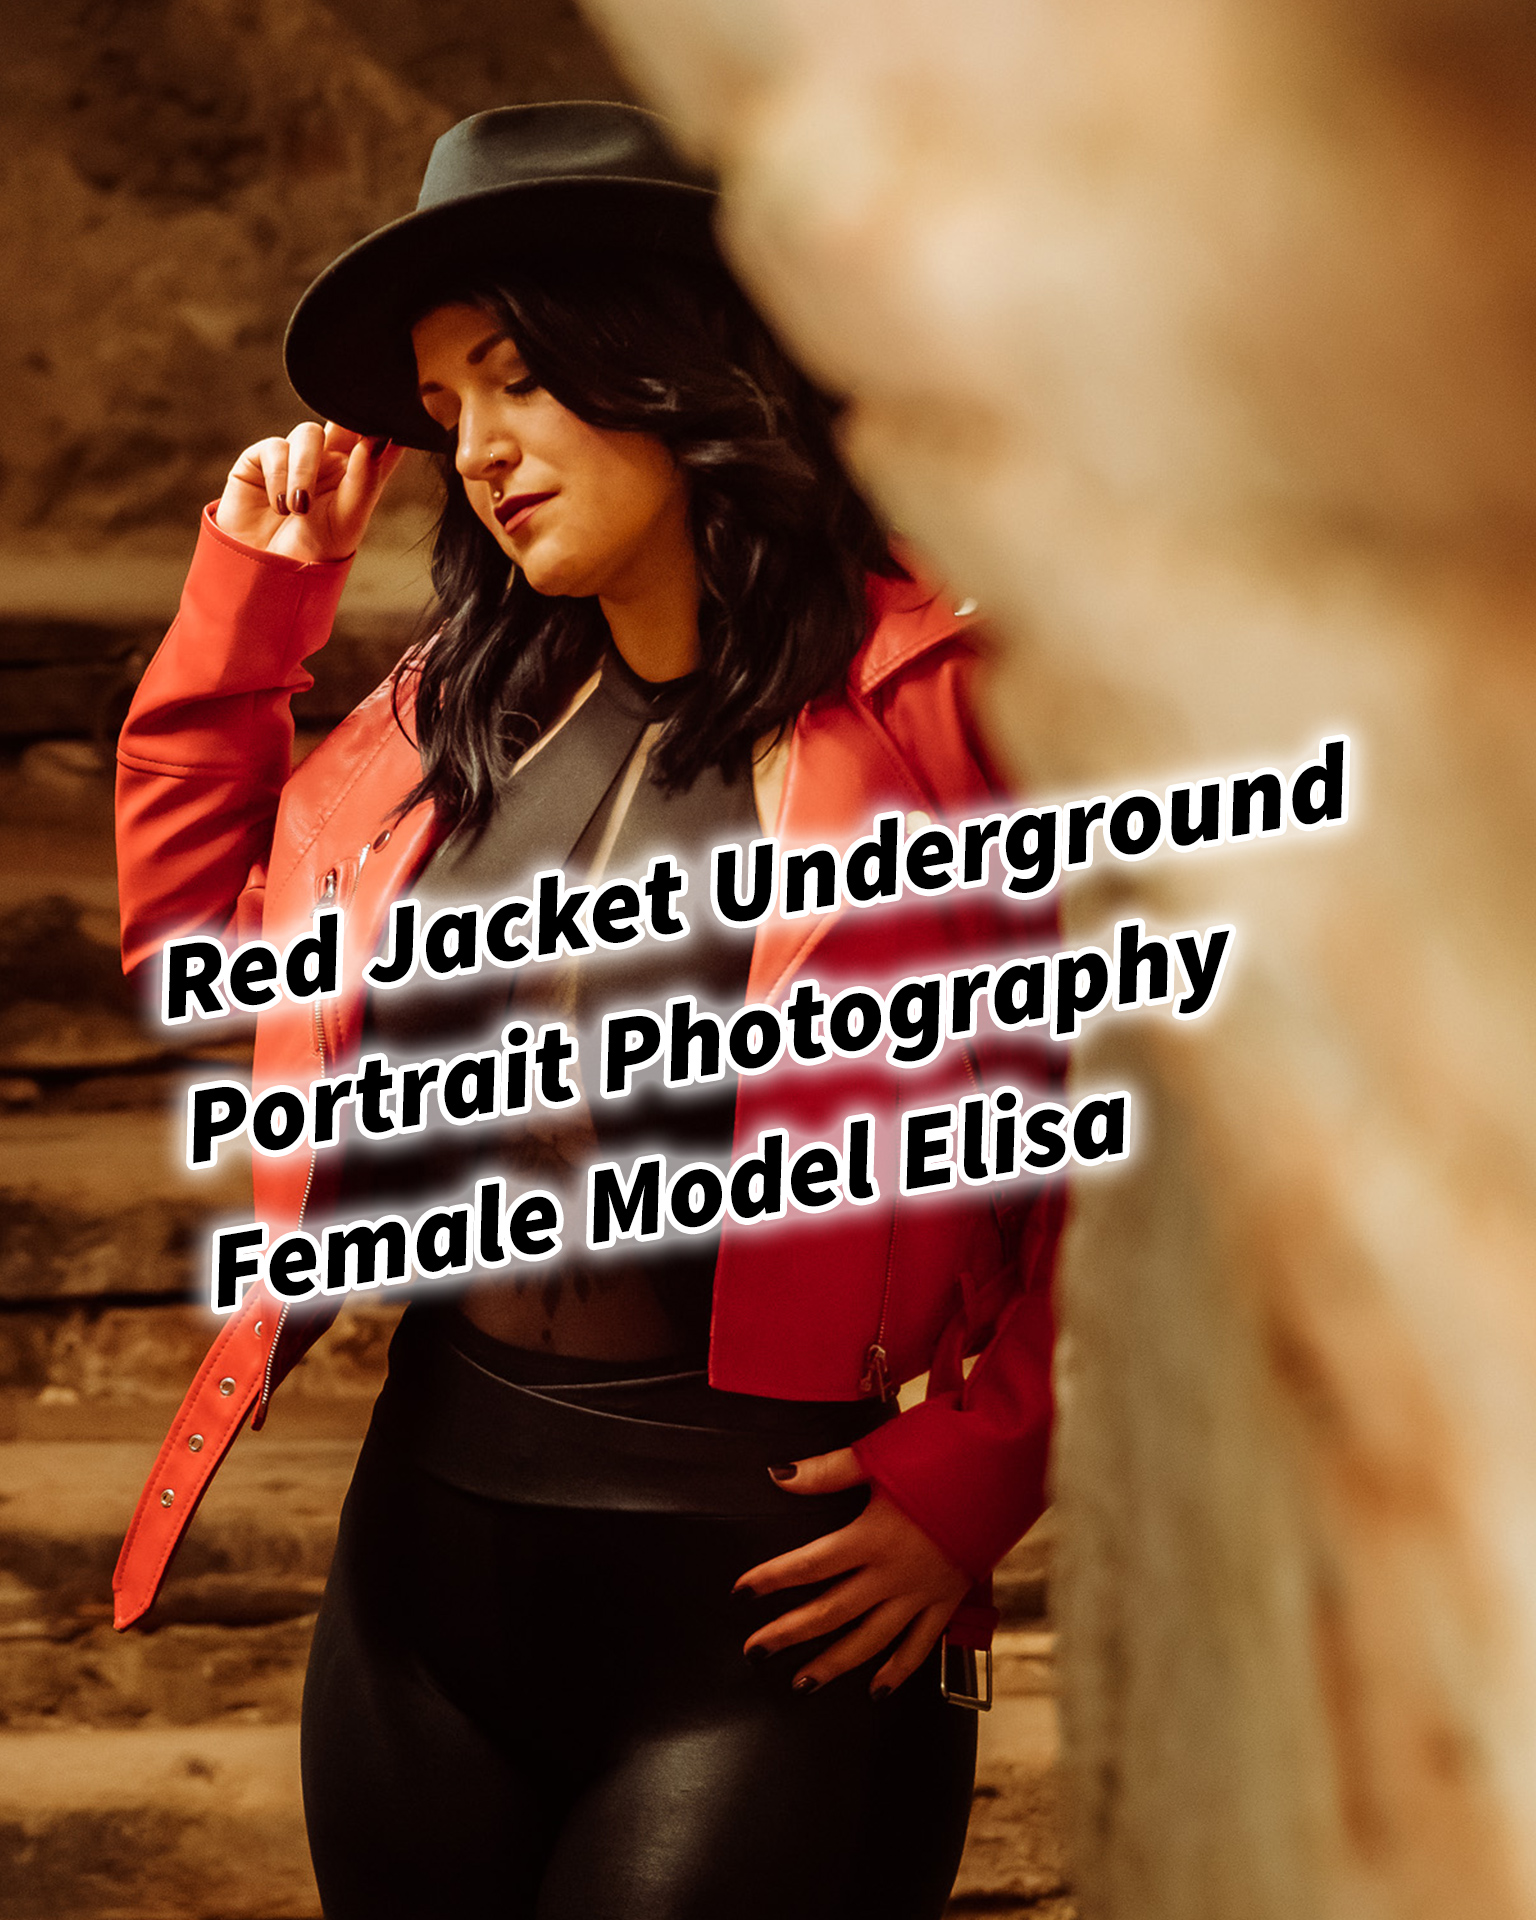 Red Jacket Underground Keller Gewölbe Portrait Photography Female Tattoo Model Elisa in Graz